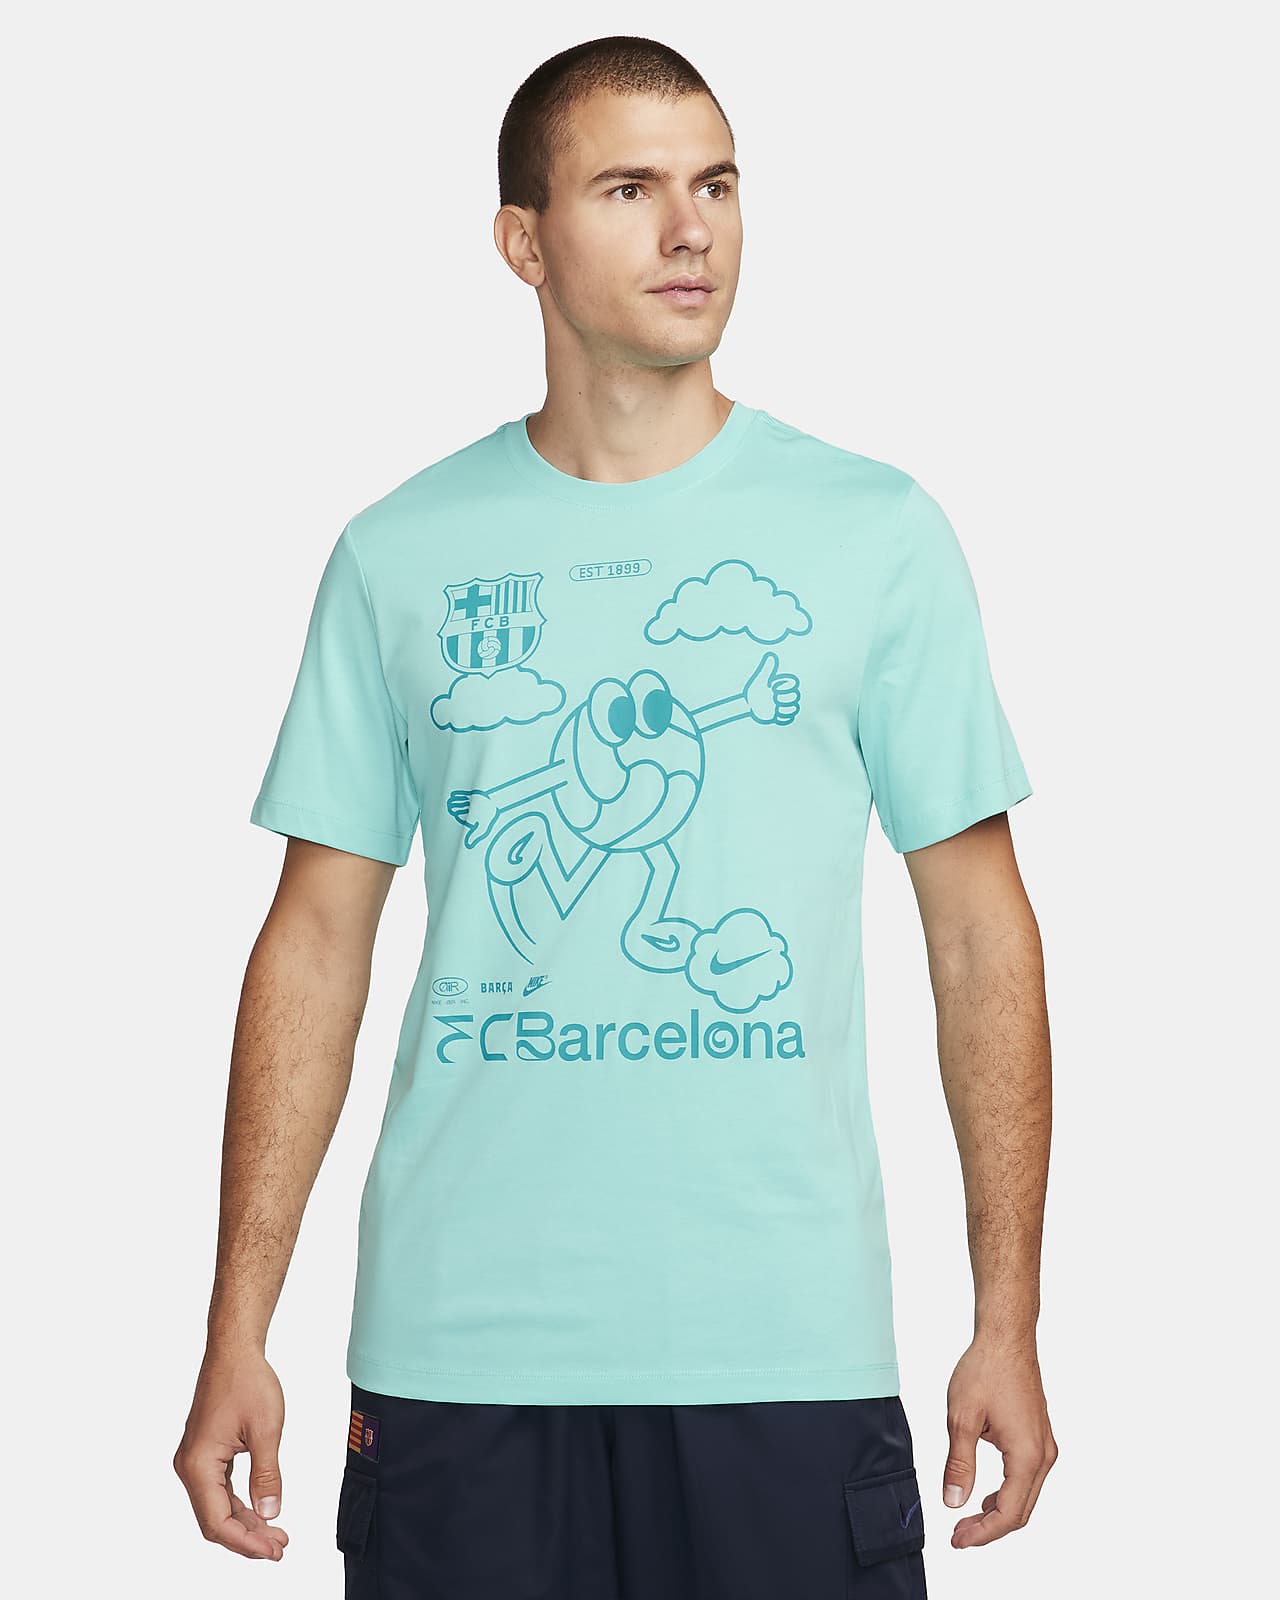 FC Barcelona Men's Nike Air Soccer T-Shirt